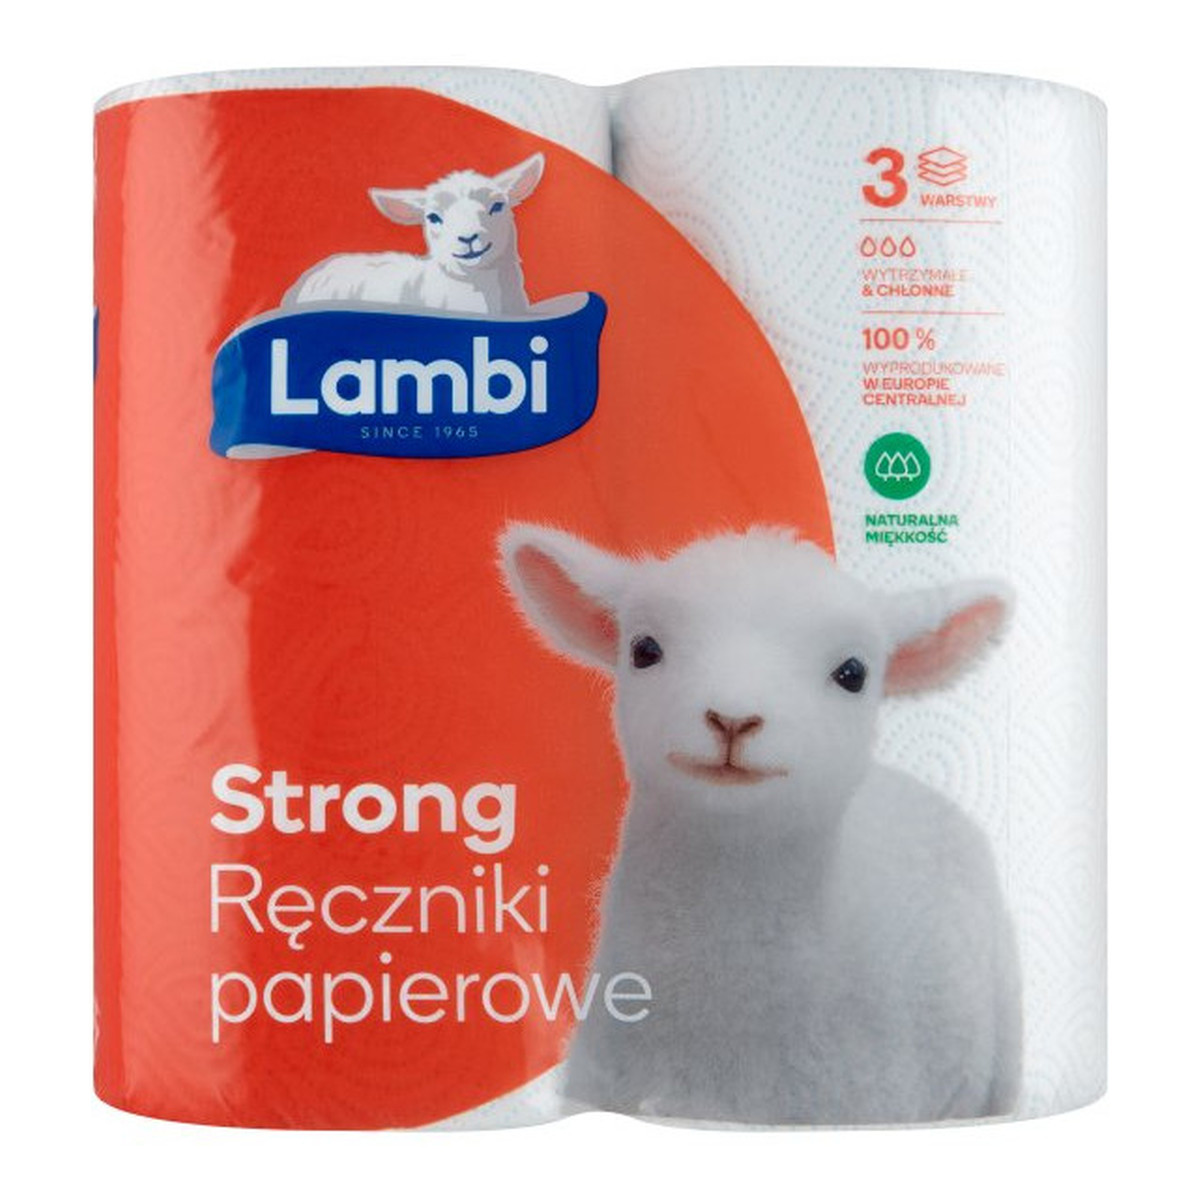 Lambi Strong Ręczniki papierowe 2 rolki